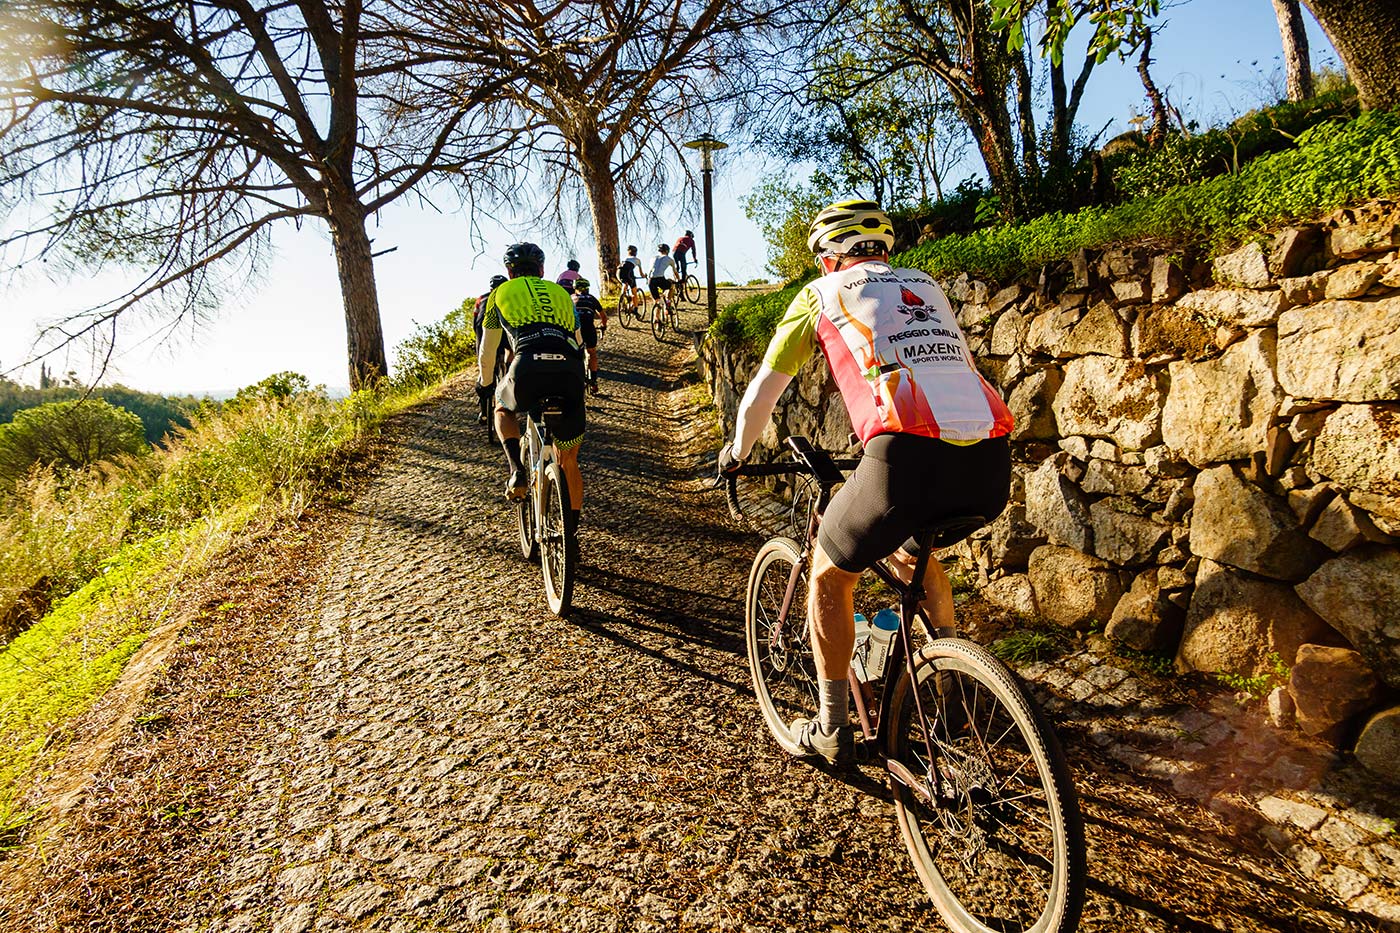 steep cobble road start for thomson gravel bike tour in portugal